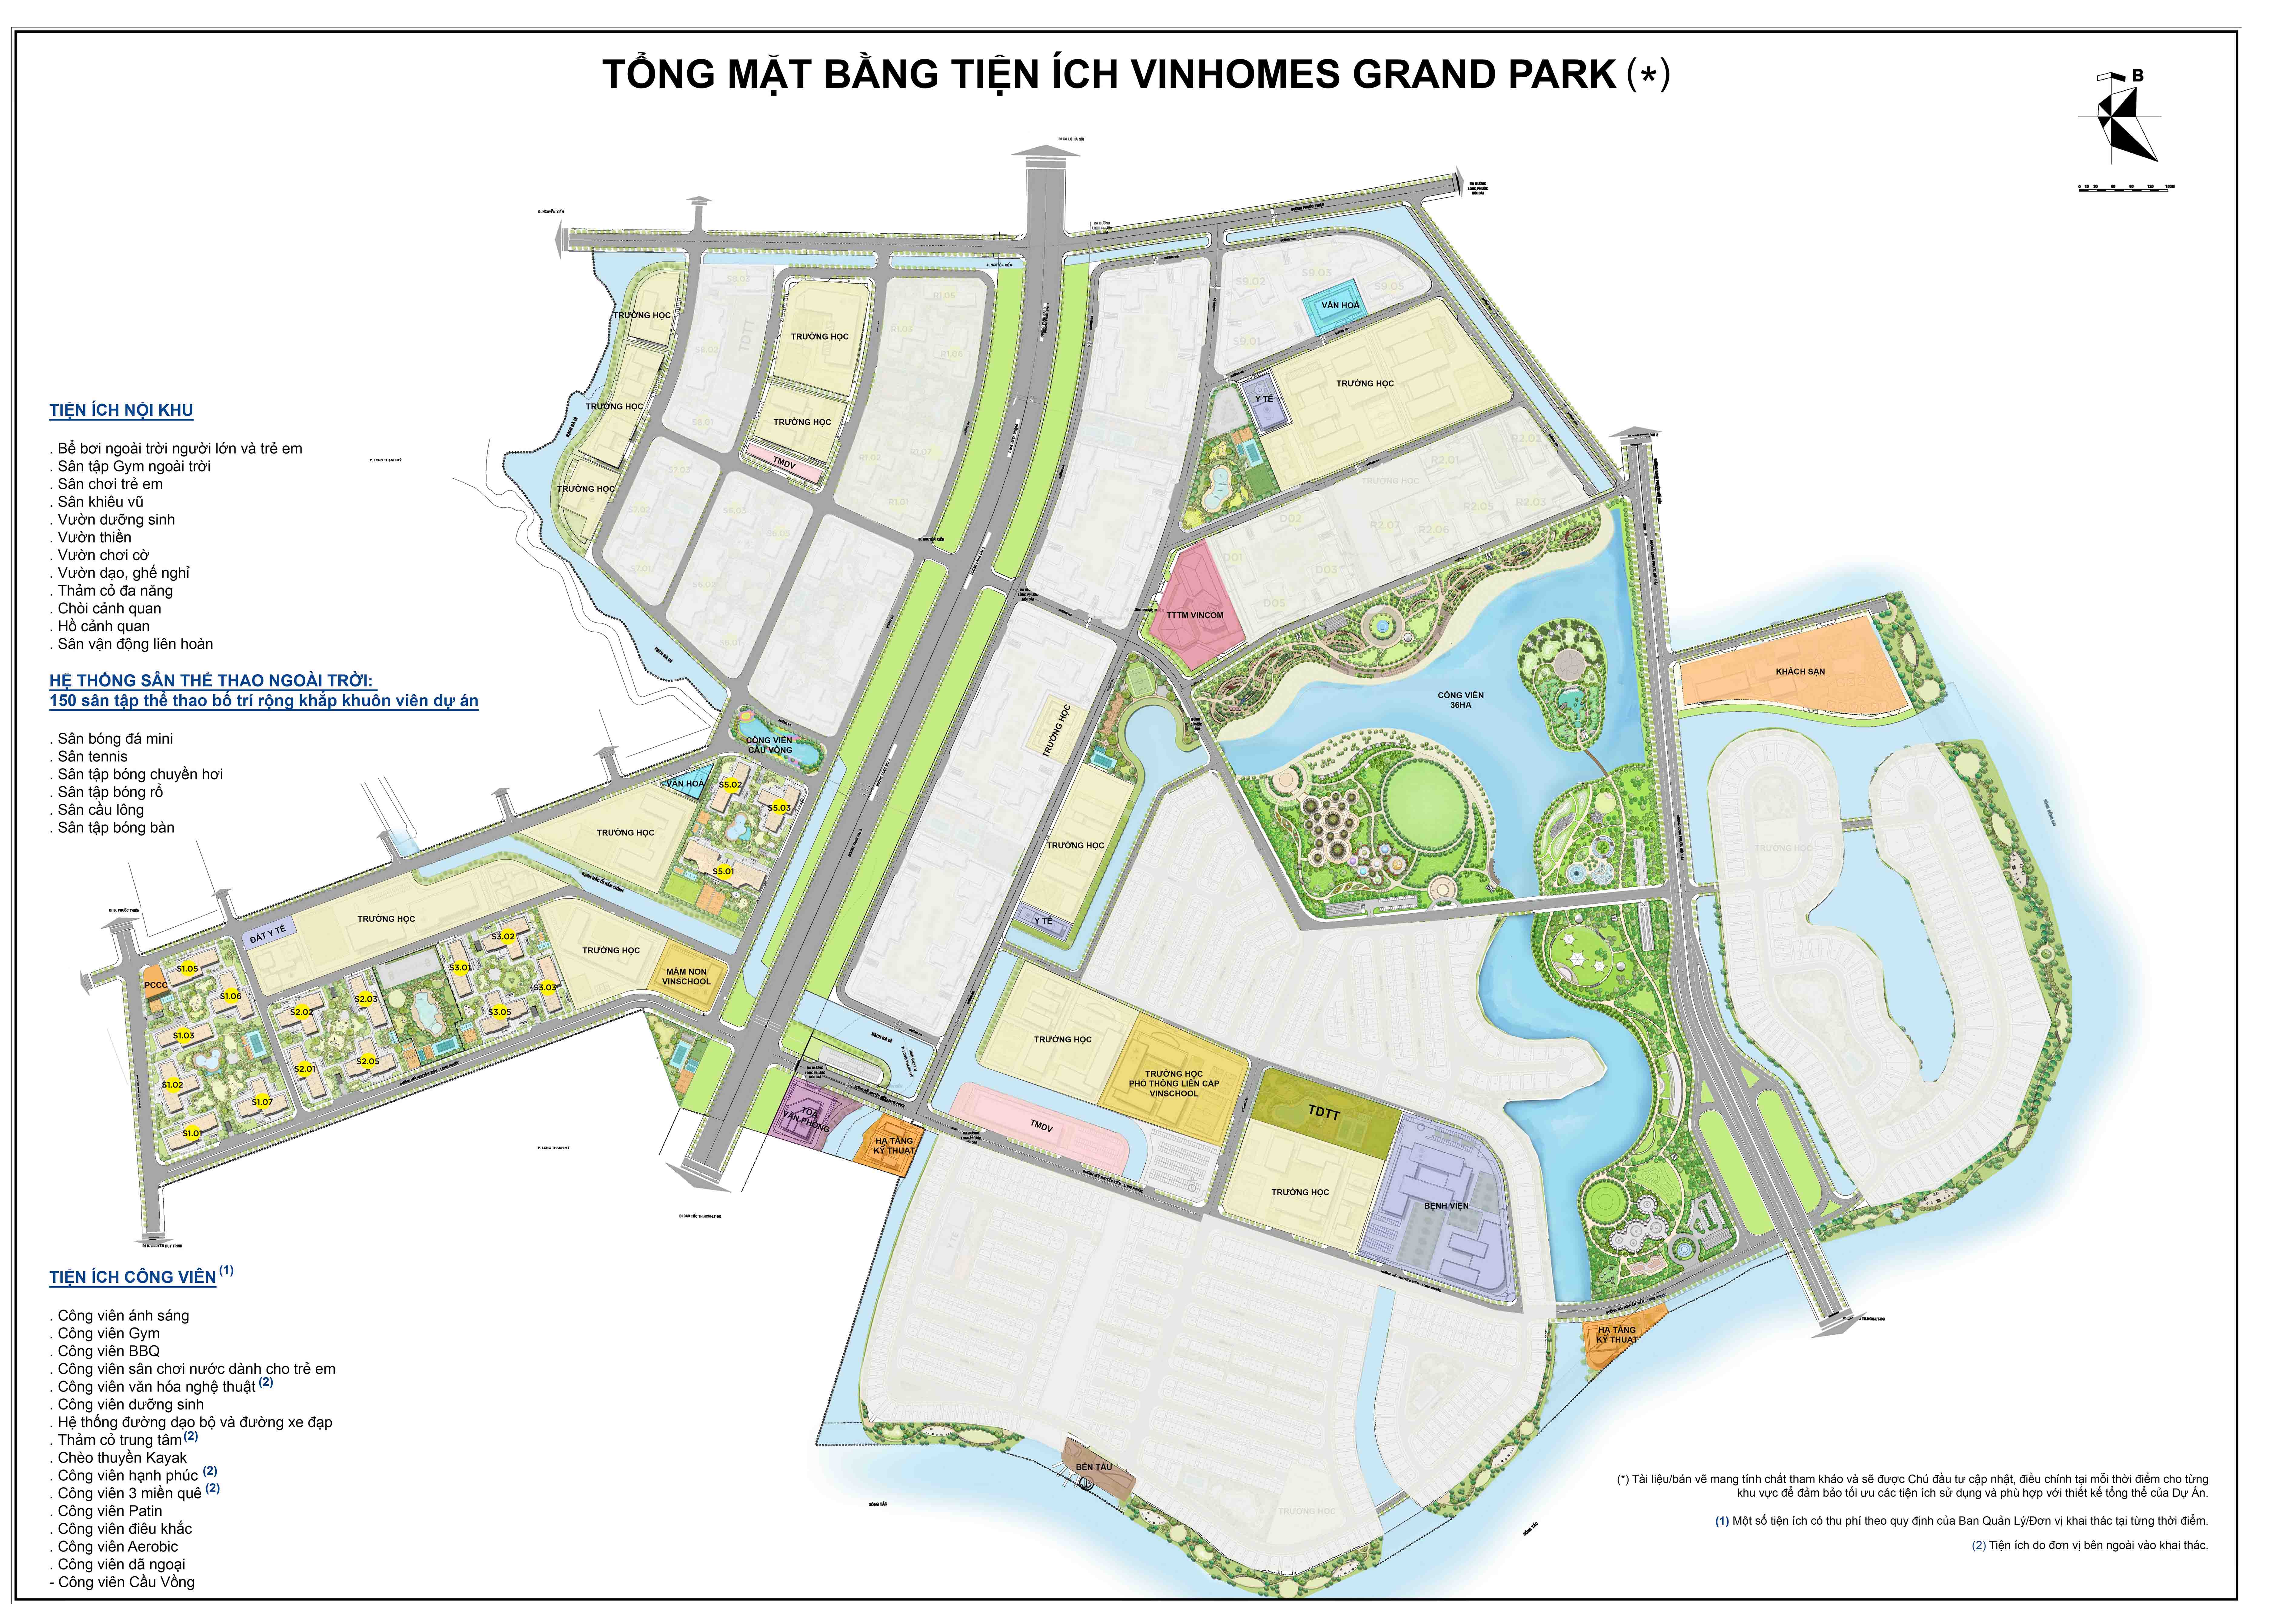 Vinhomes-Grand-Park-Tong-Mat-Bang-Tien-Ich